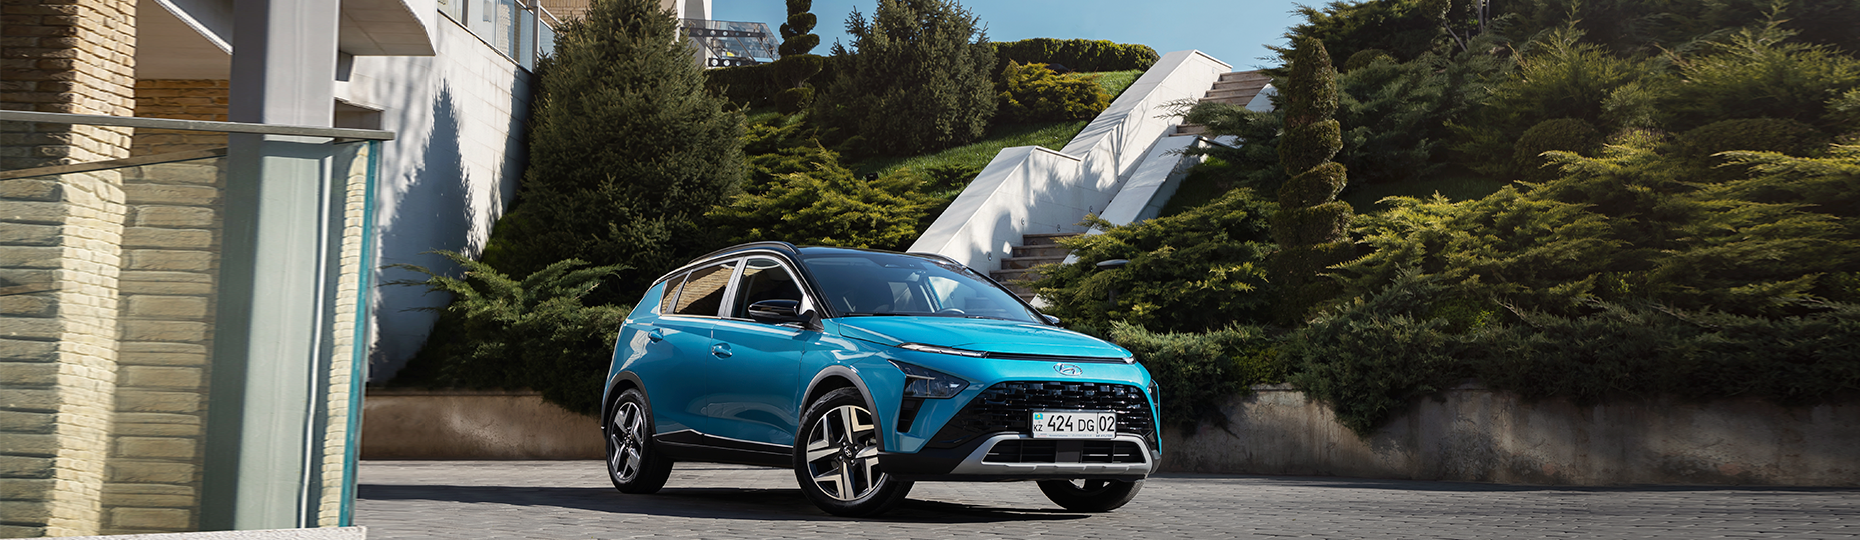 Производительность нового Hyundai Bayon | Официальный дилер в Алматы